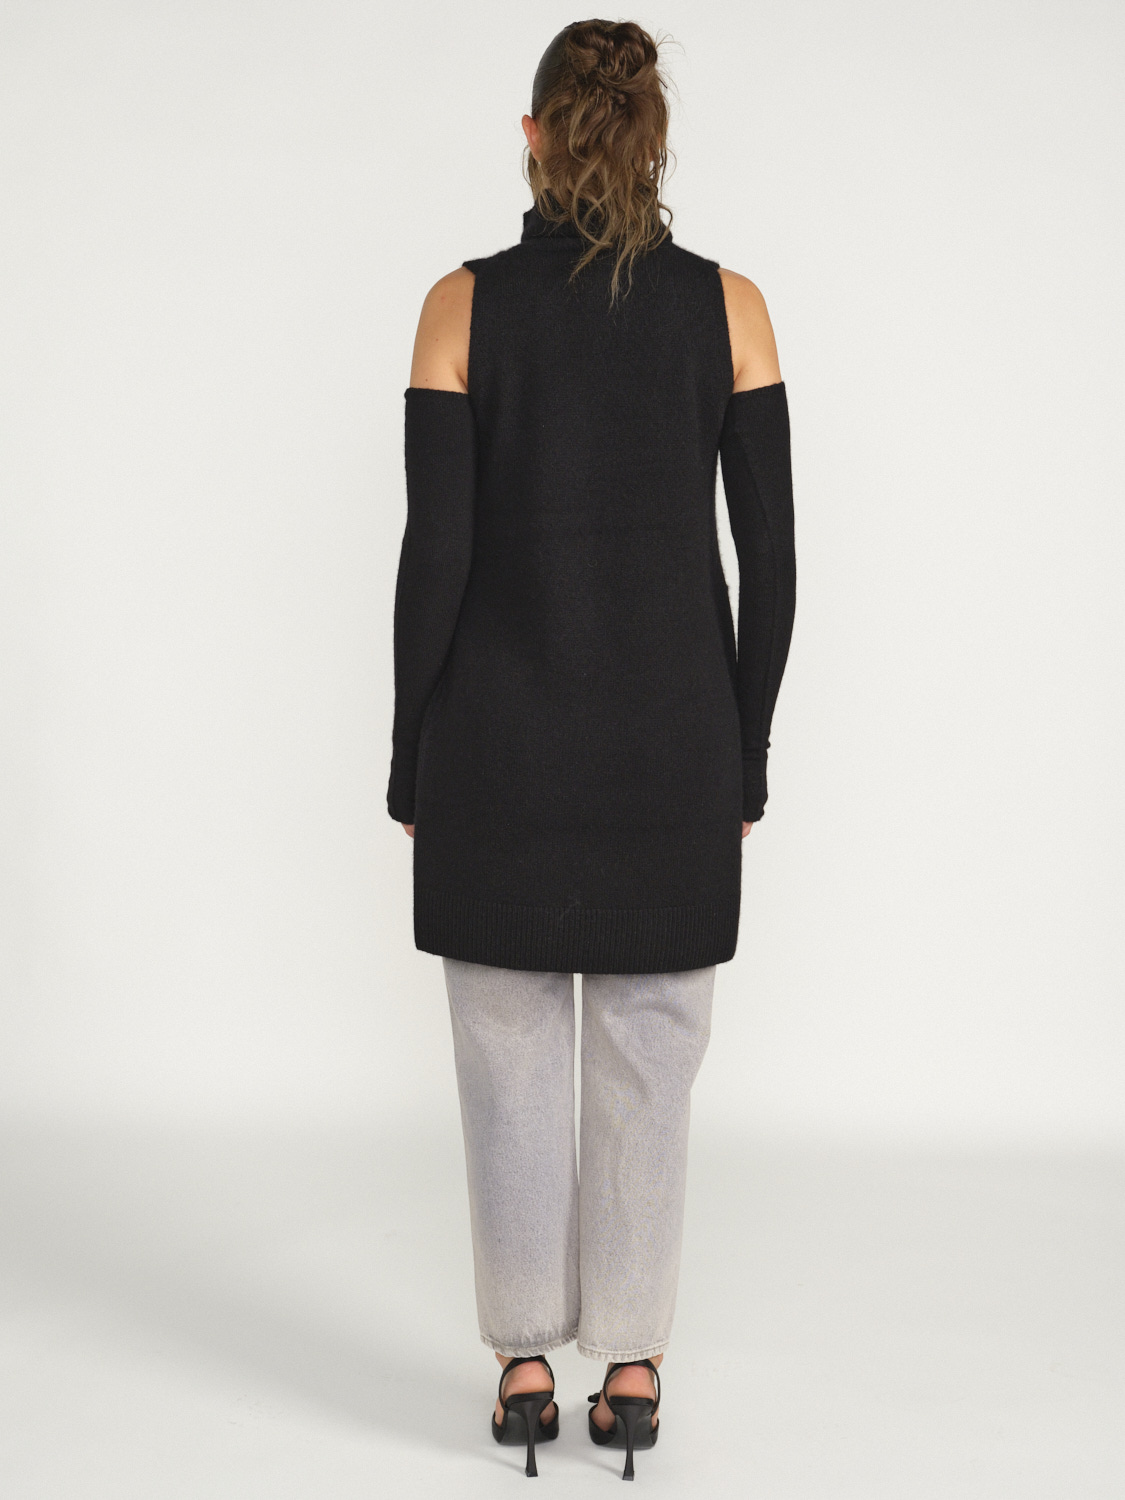 Iris von Arnim Svea - Sleeveless dress in cashmere black M